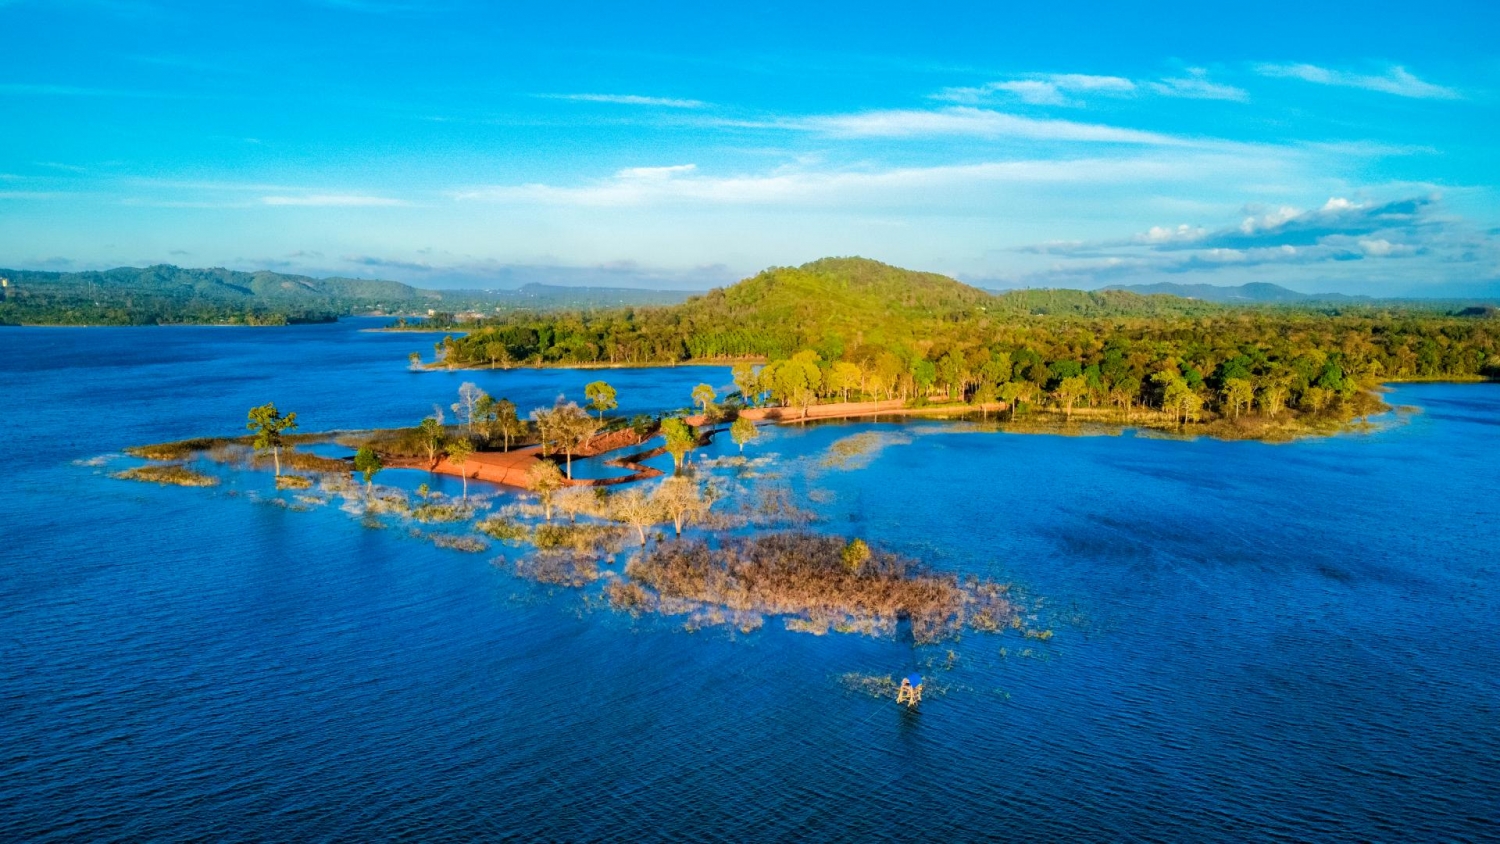 Lâm viên cảnh Ea Kao - Viên ngọc xanh giữa lòng hồ Ea Kao